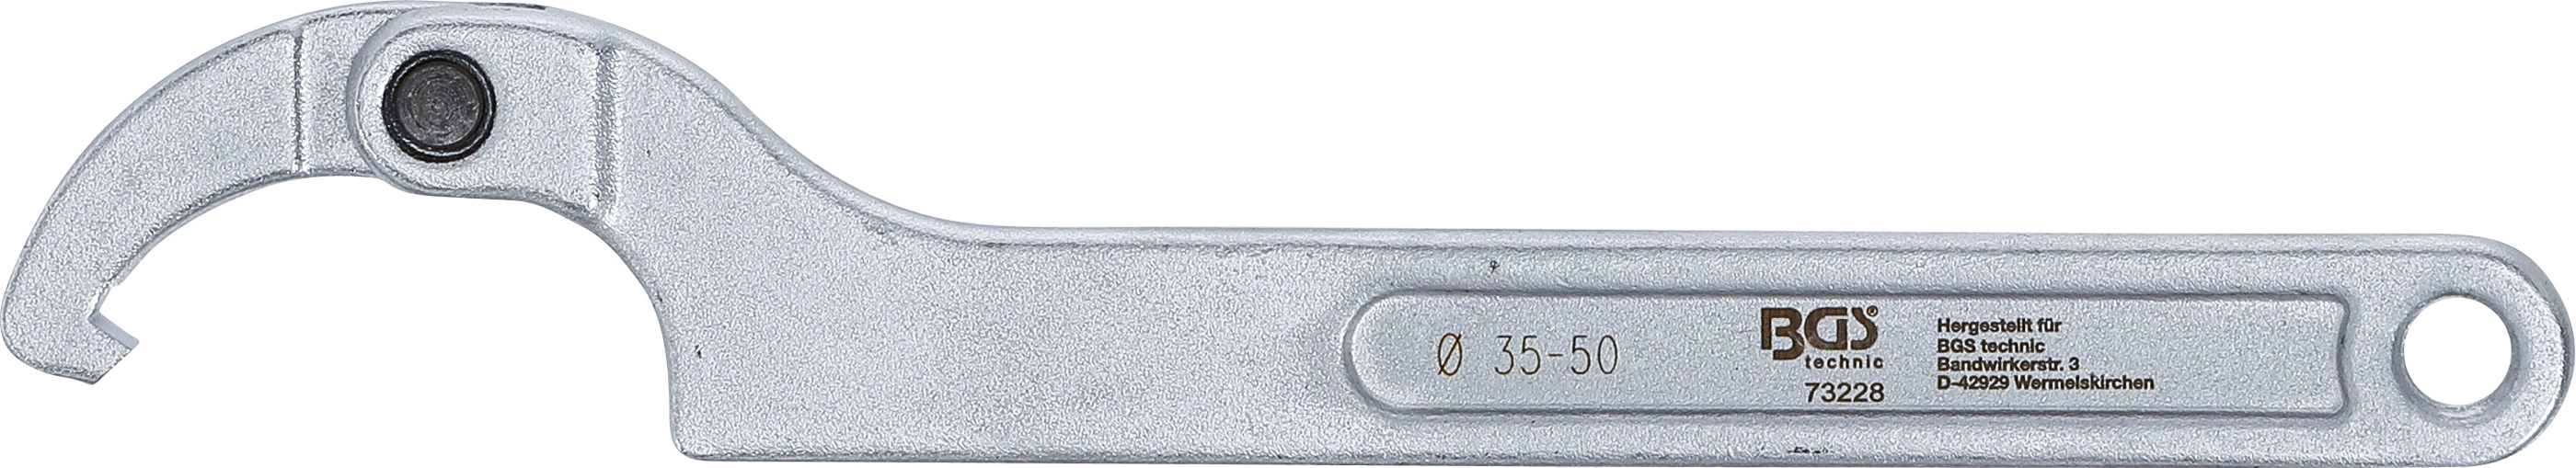 BGS Gelenk-Hakenschlüssel mit Nase | 35 - 50 mm